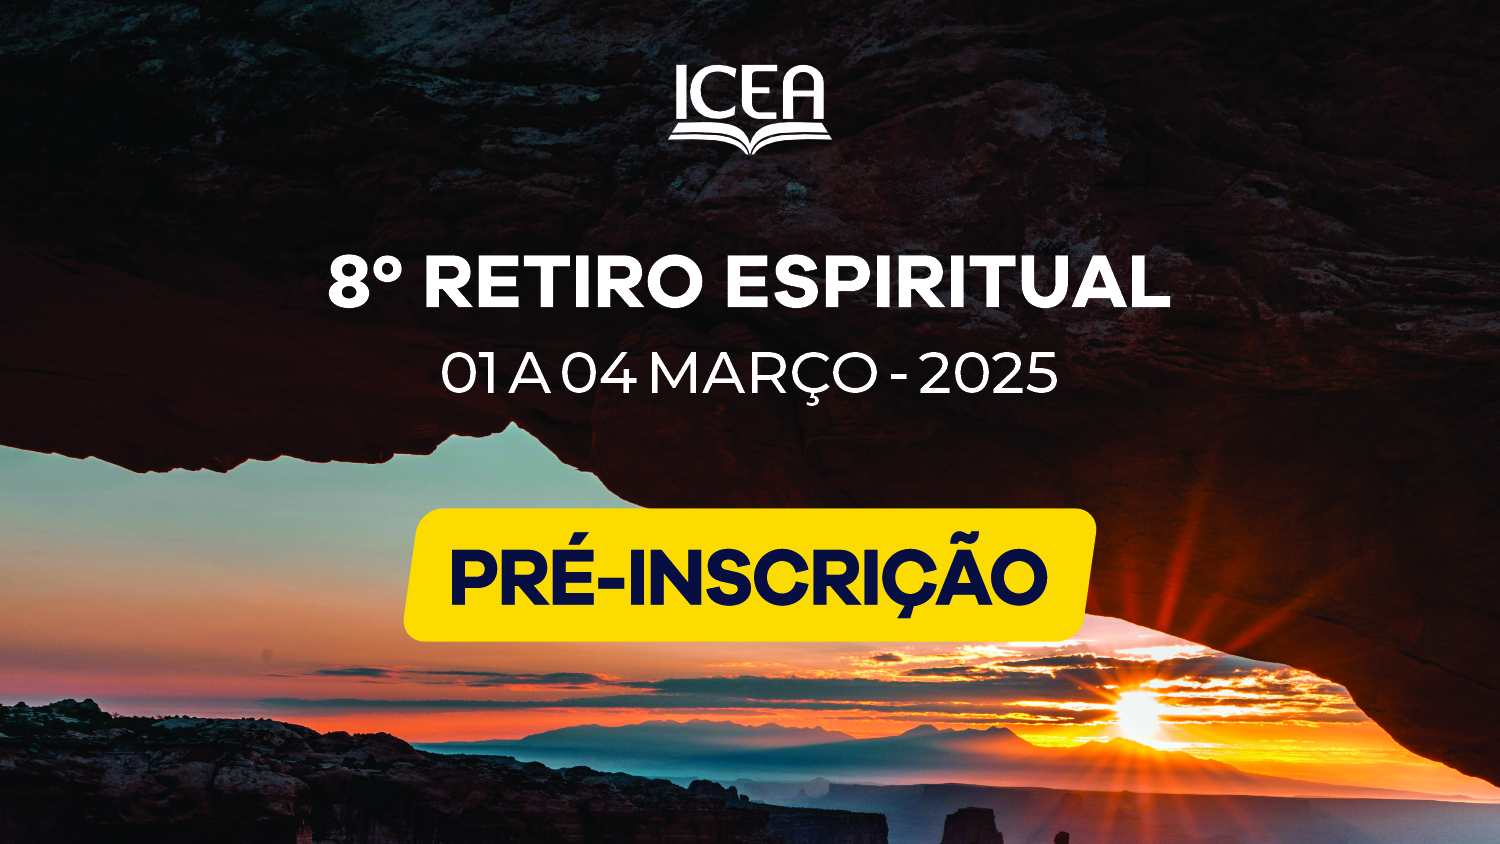 Retiro Espiritual da ICEA - 2025 - Faça já sua inscrição!